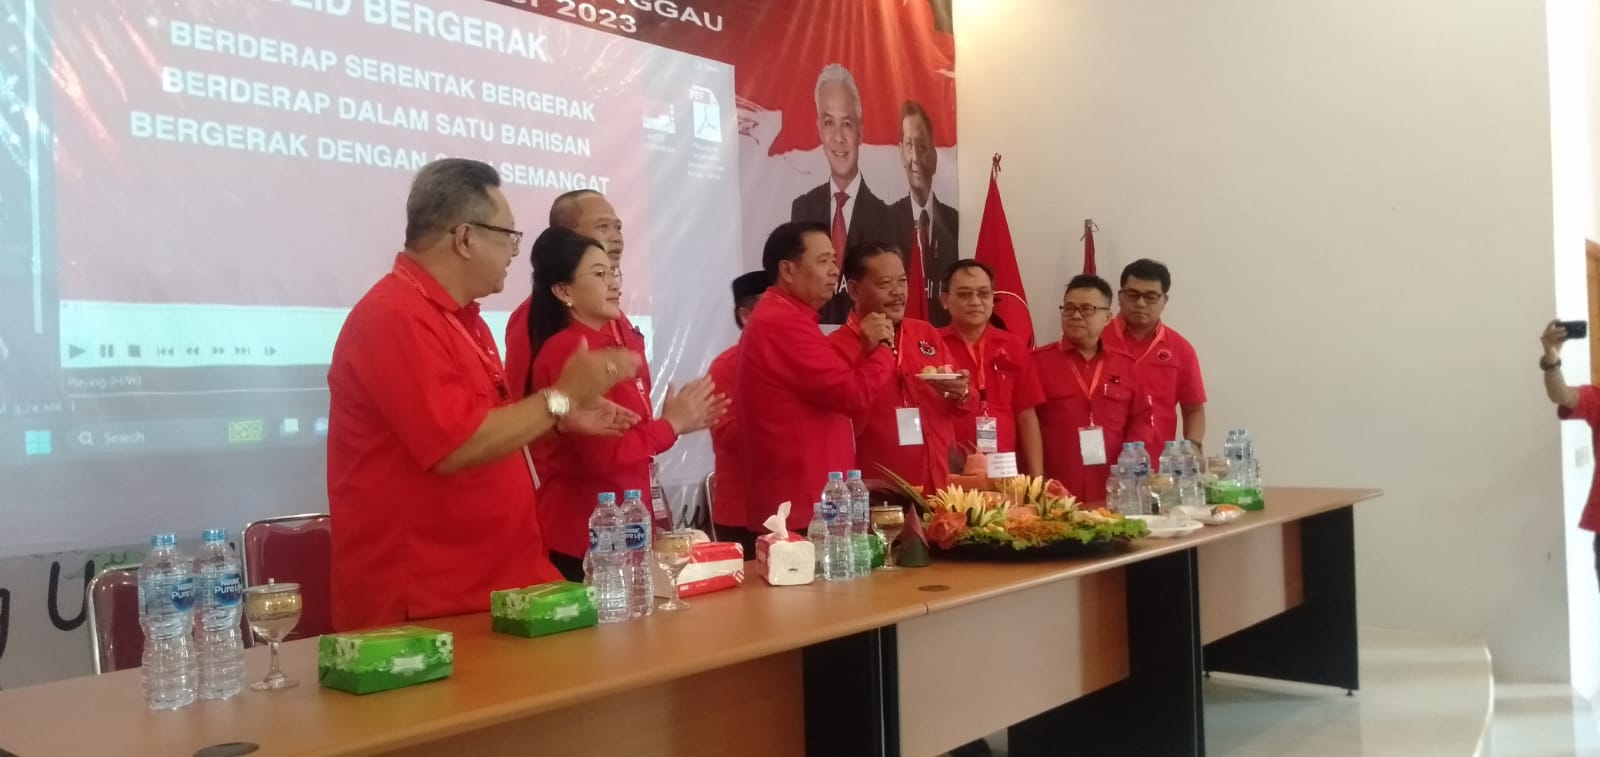 Lazarus Buka Rakercab III dan IV PDIP Kabupaten Sanggau, Target 12 Kursi DPRD, 3 Kursi DPR RI – Kalimantan Today